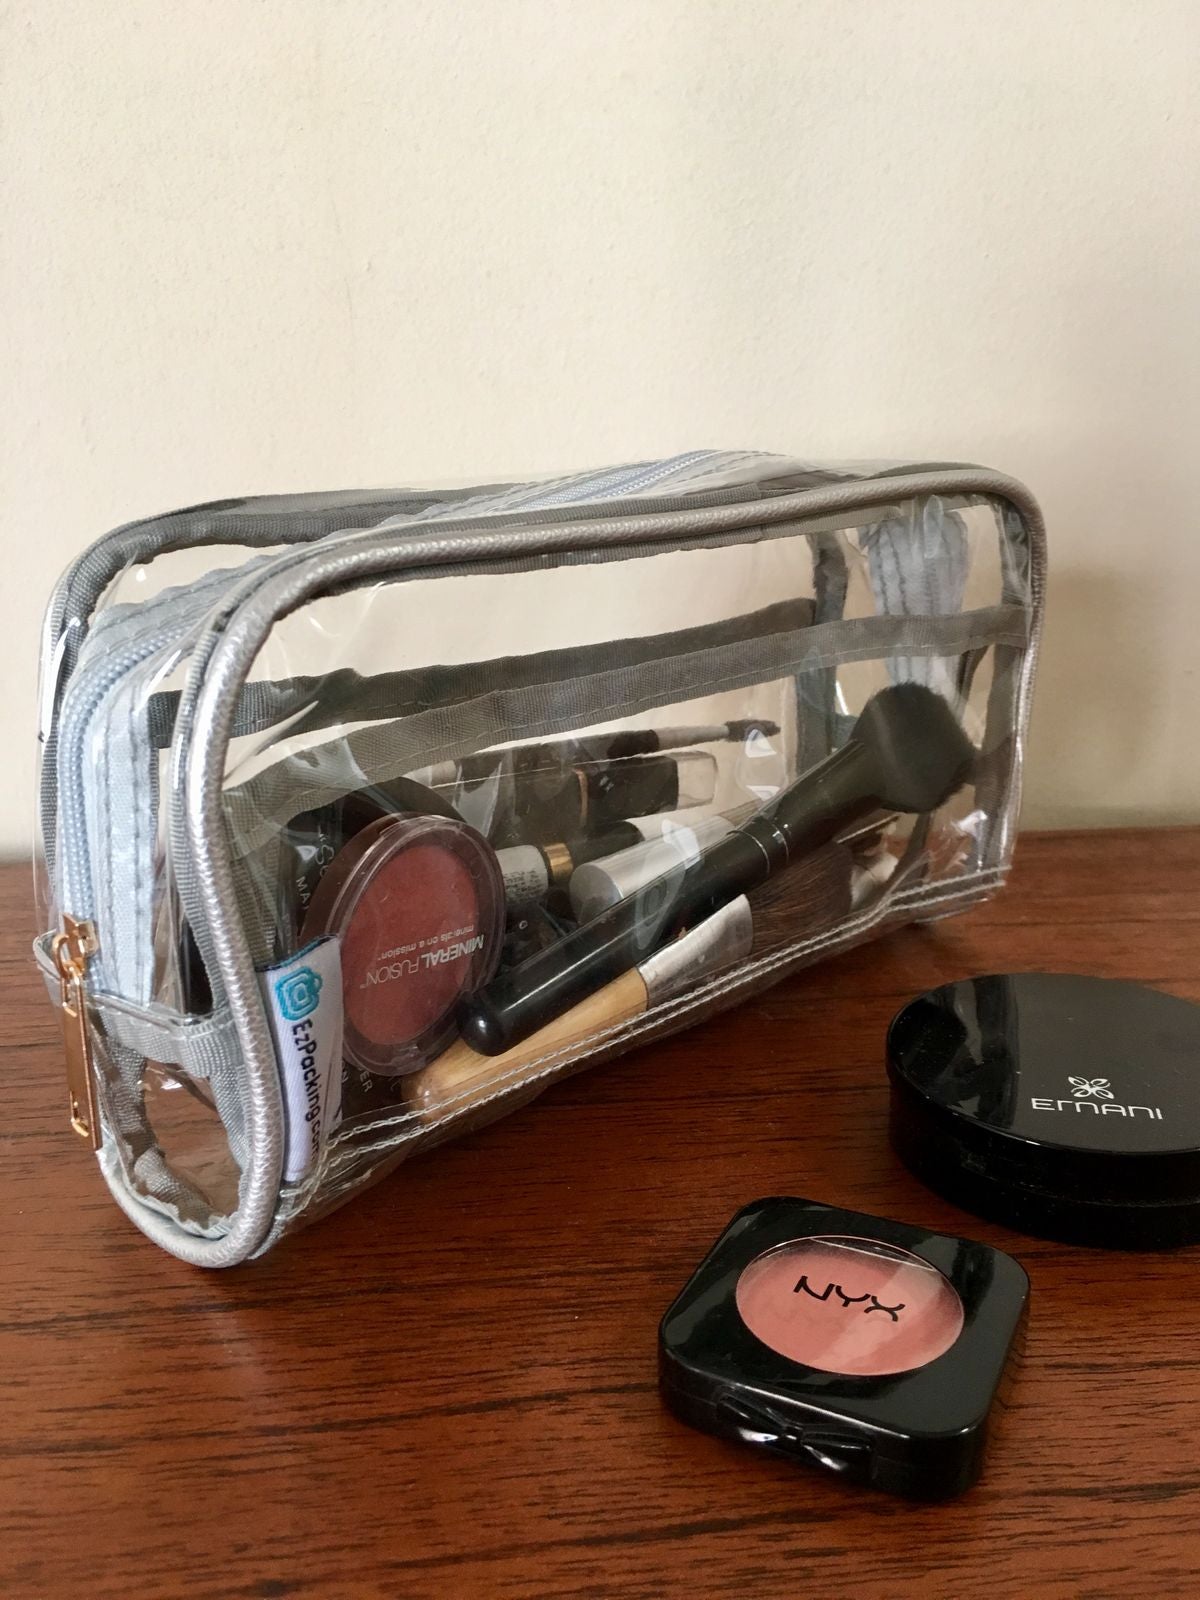 Clear makeup bag